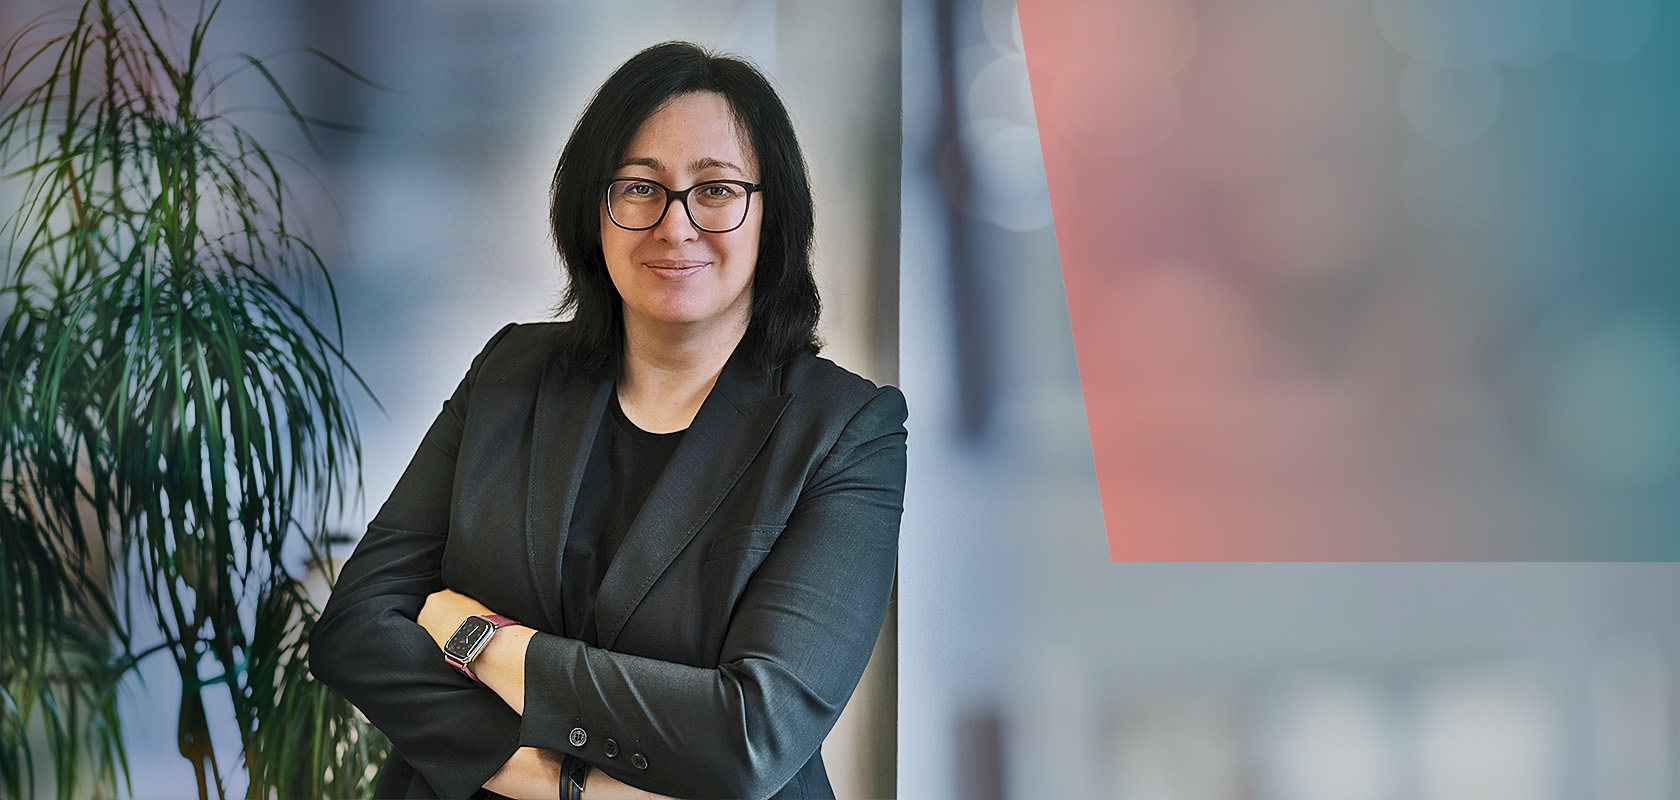 Michaela Berger, Rechtsanwältin und Fachanwältin für IT-Recht, Datenschutz-Auditorin und Datenschutzbeauftragte in Augsburg